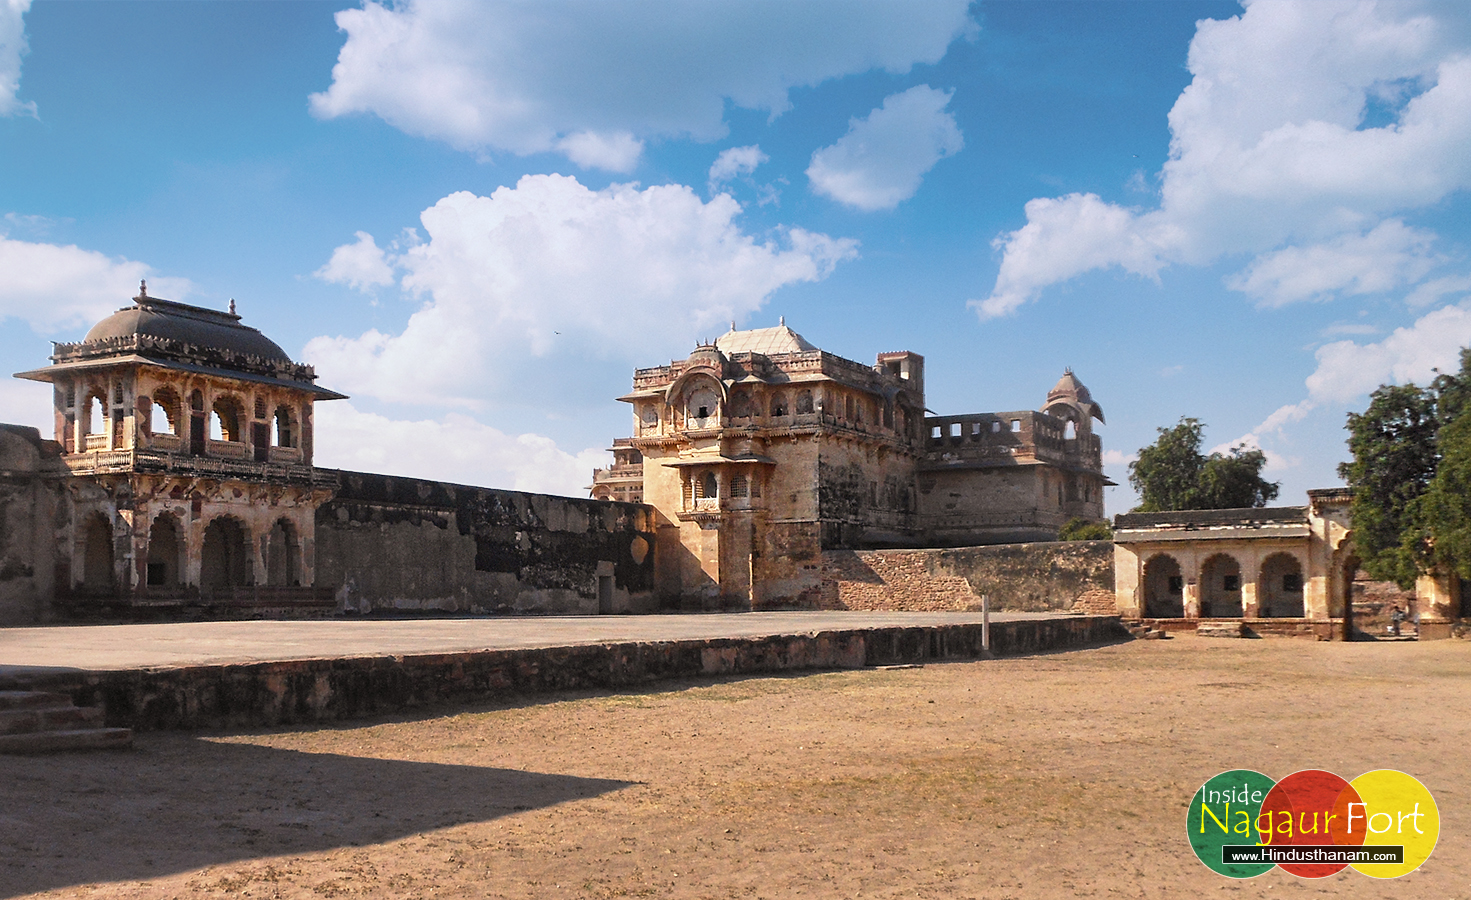 The Nagaur Fort Rajasthan “Ahichhatrapur Garh”